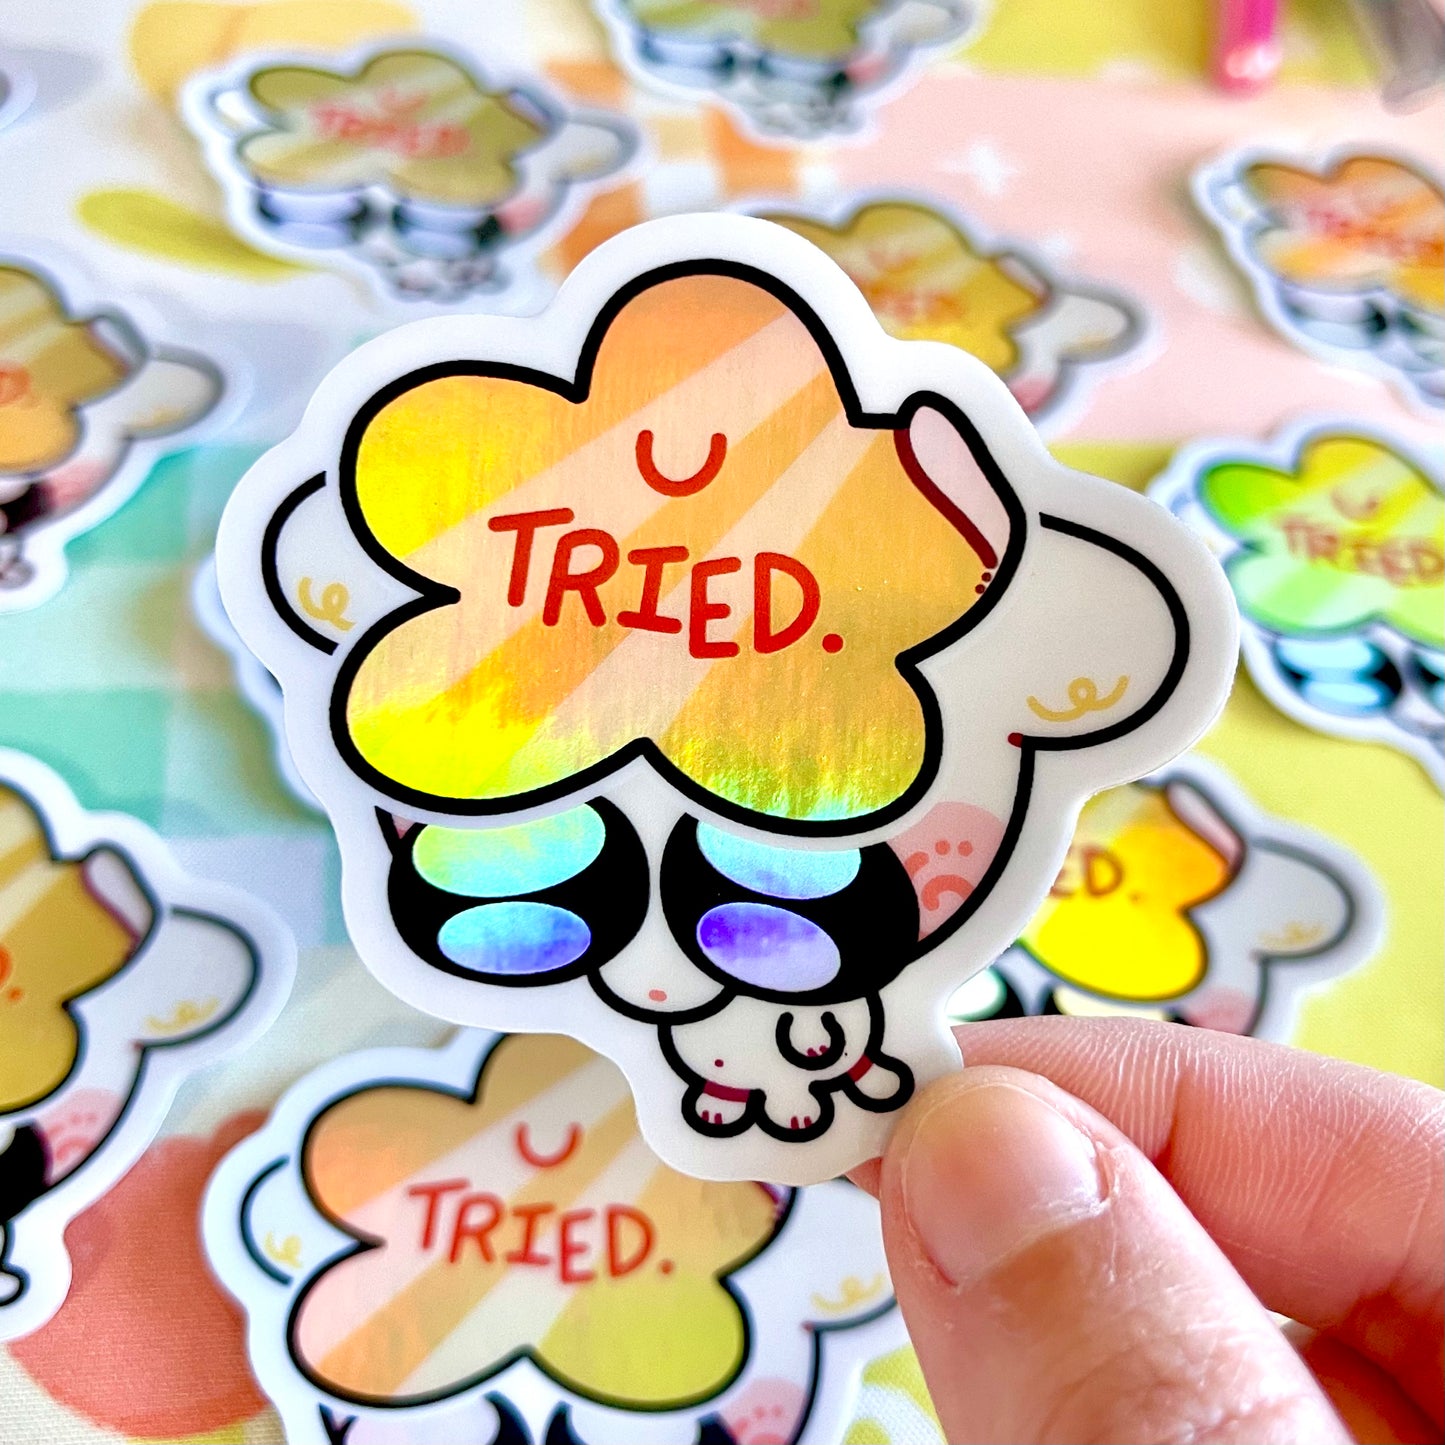 You Tried Sticker